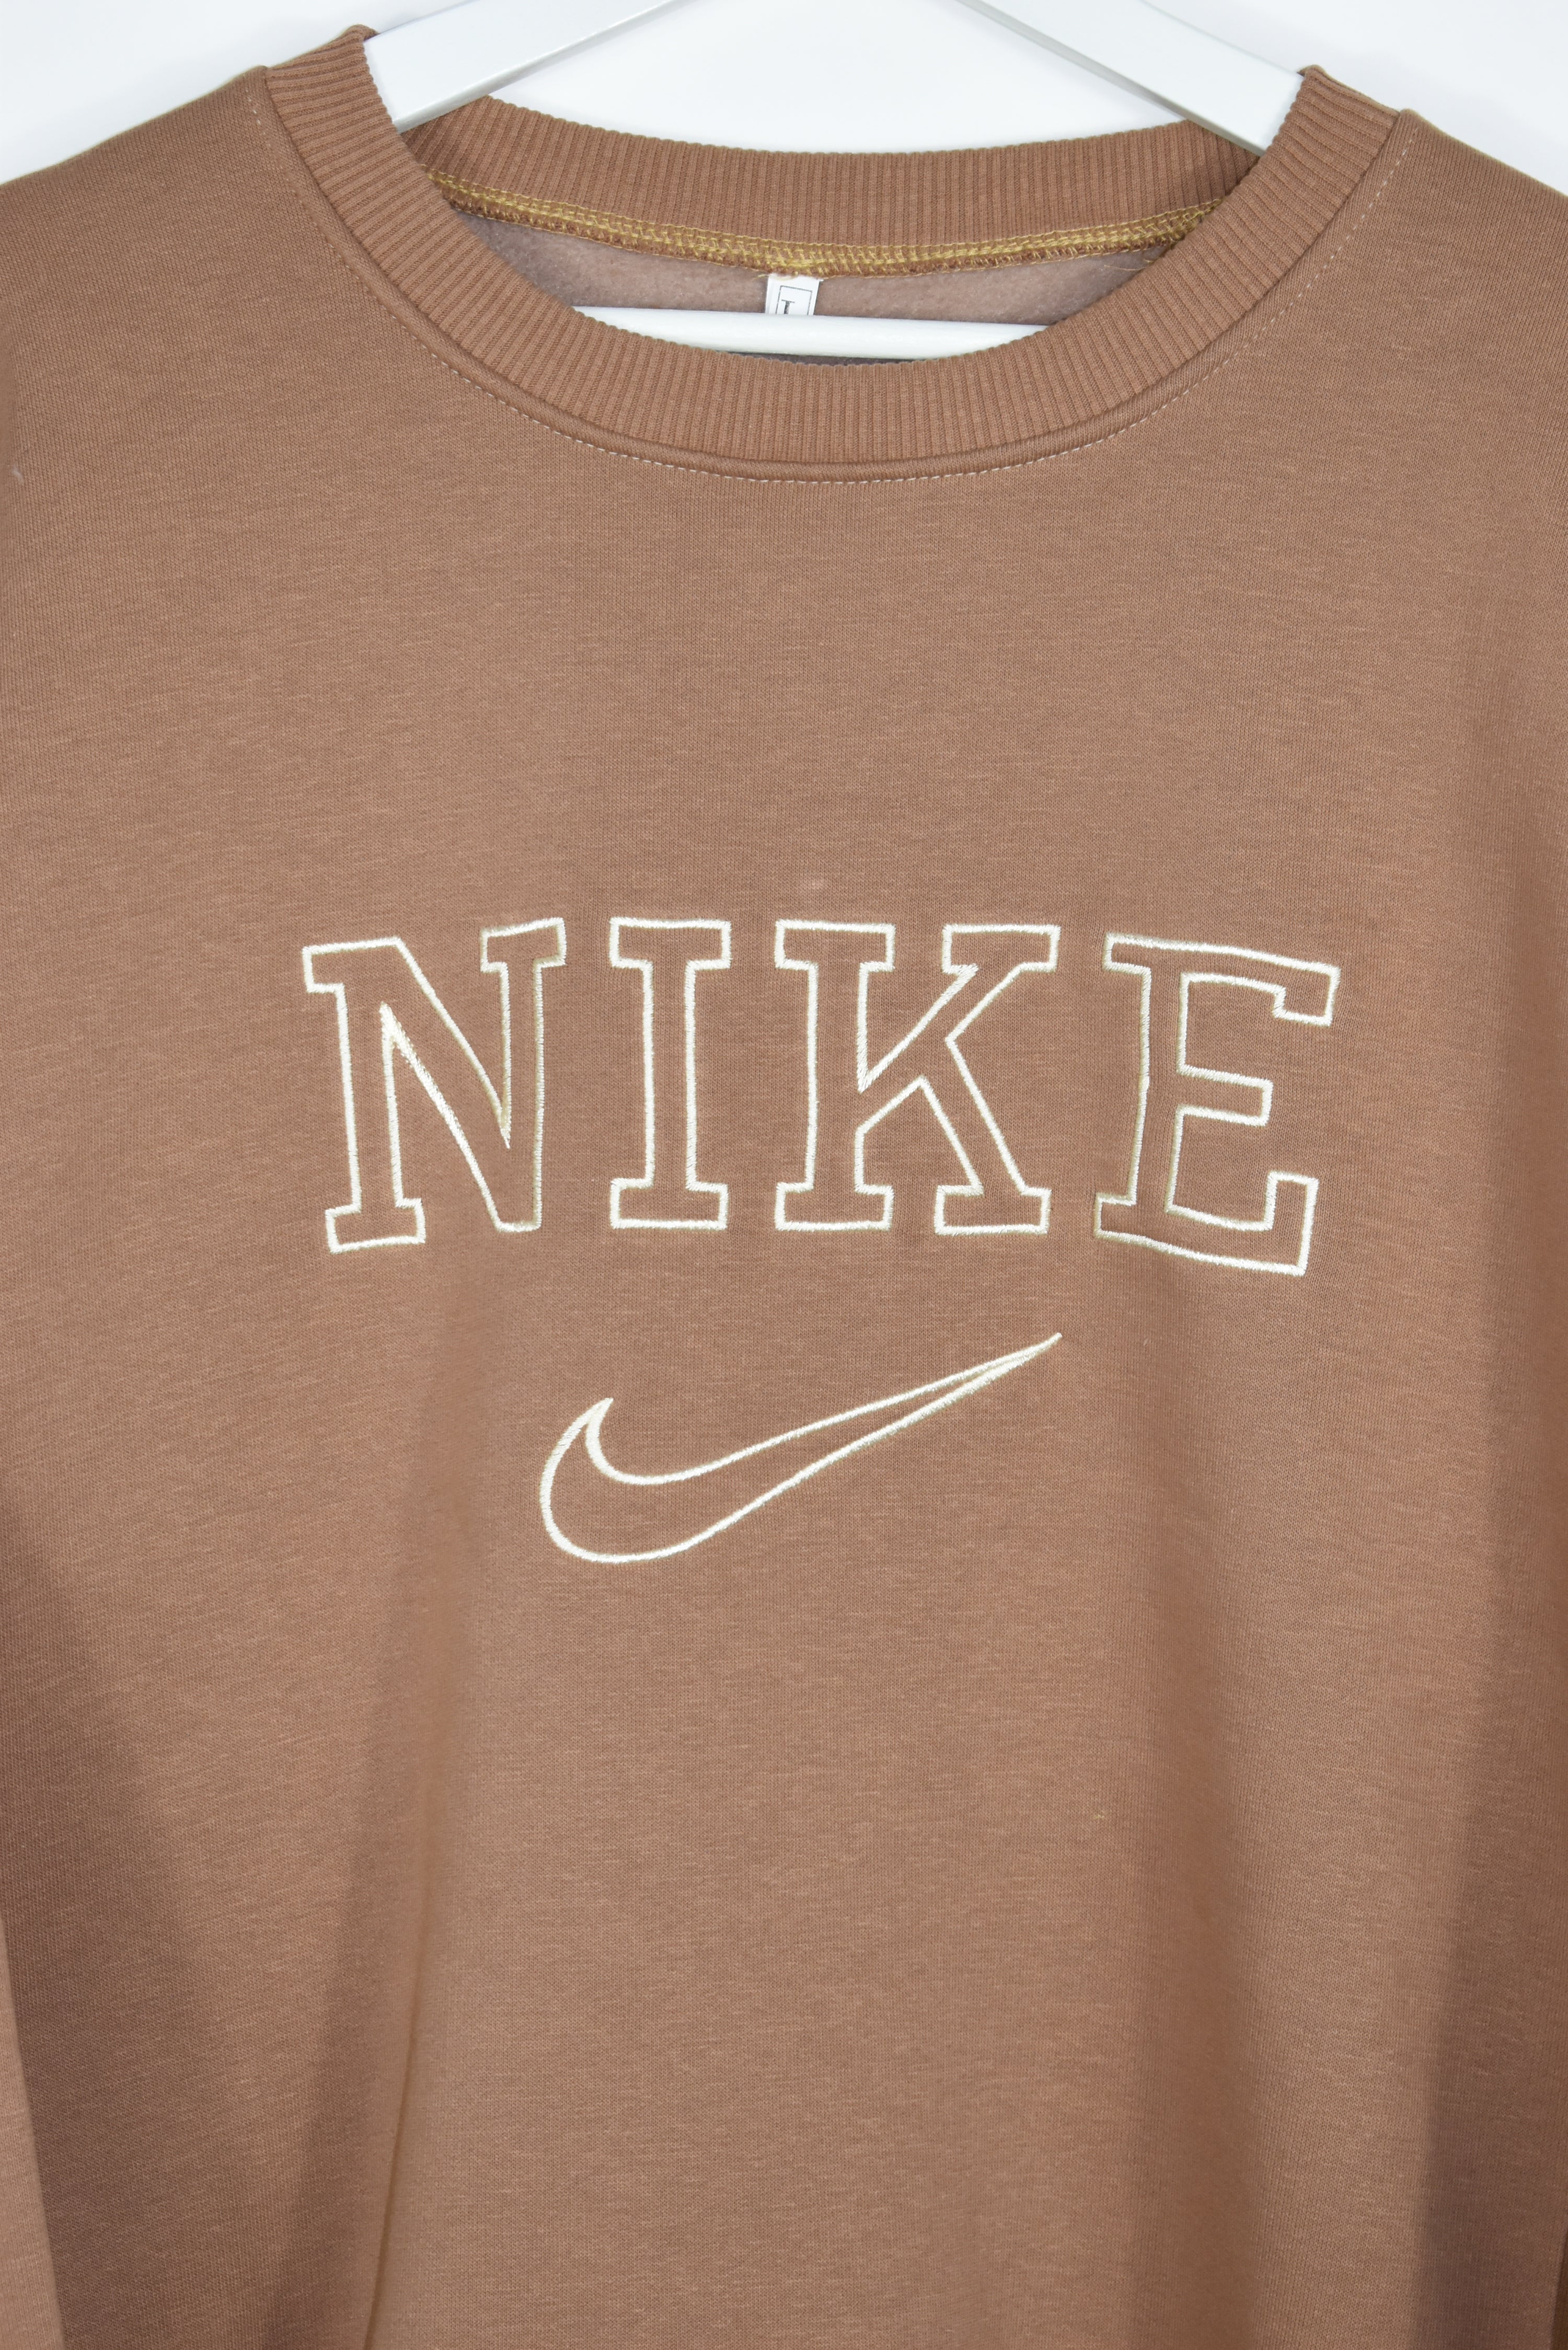 Vintage Nike Brown Bootleg Sweatshirt Medium